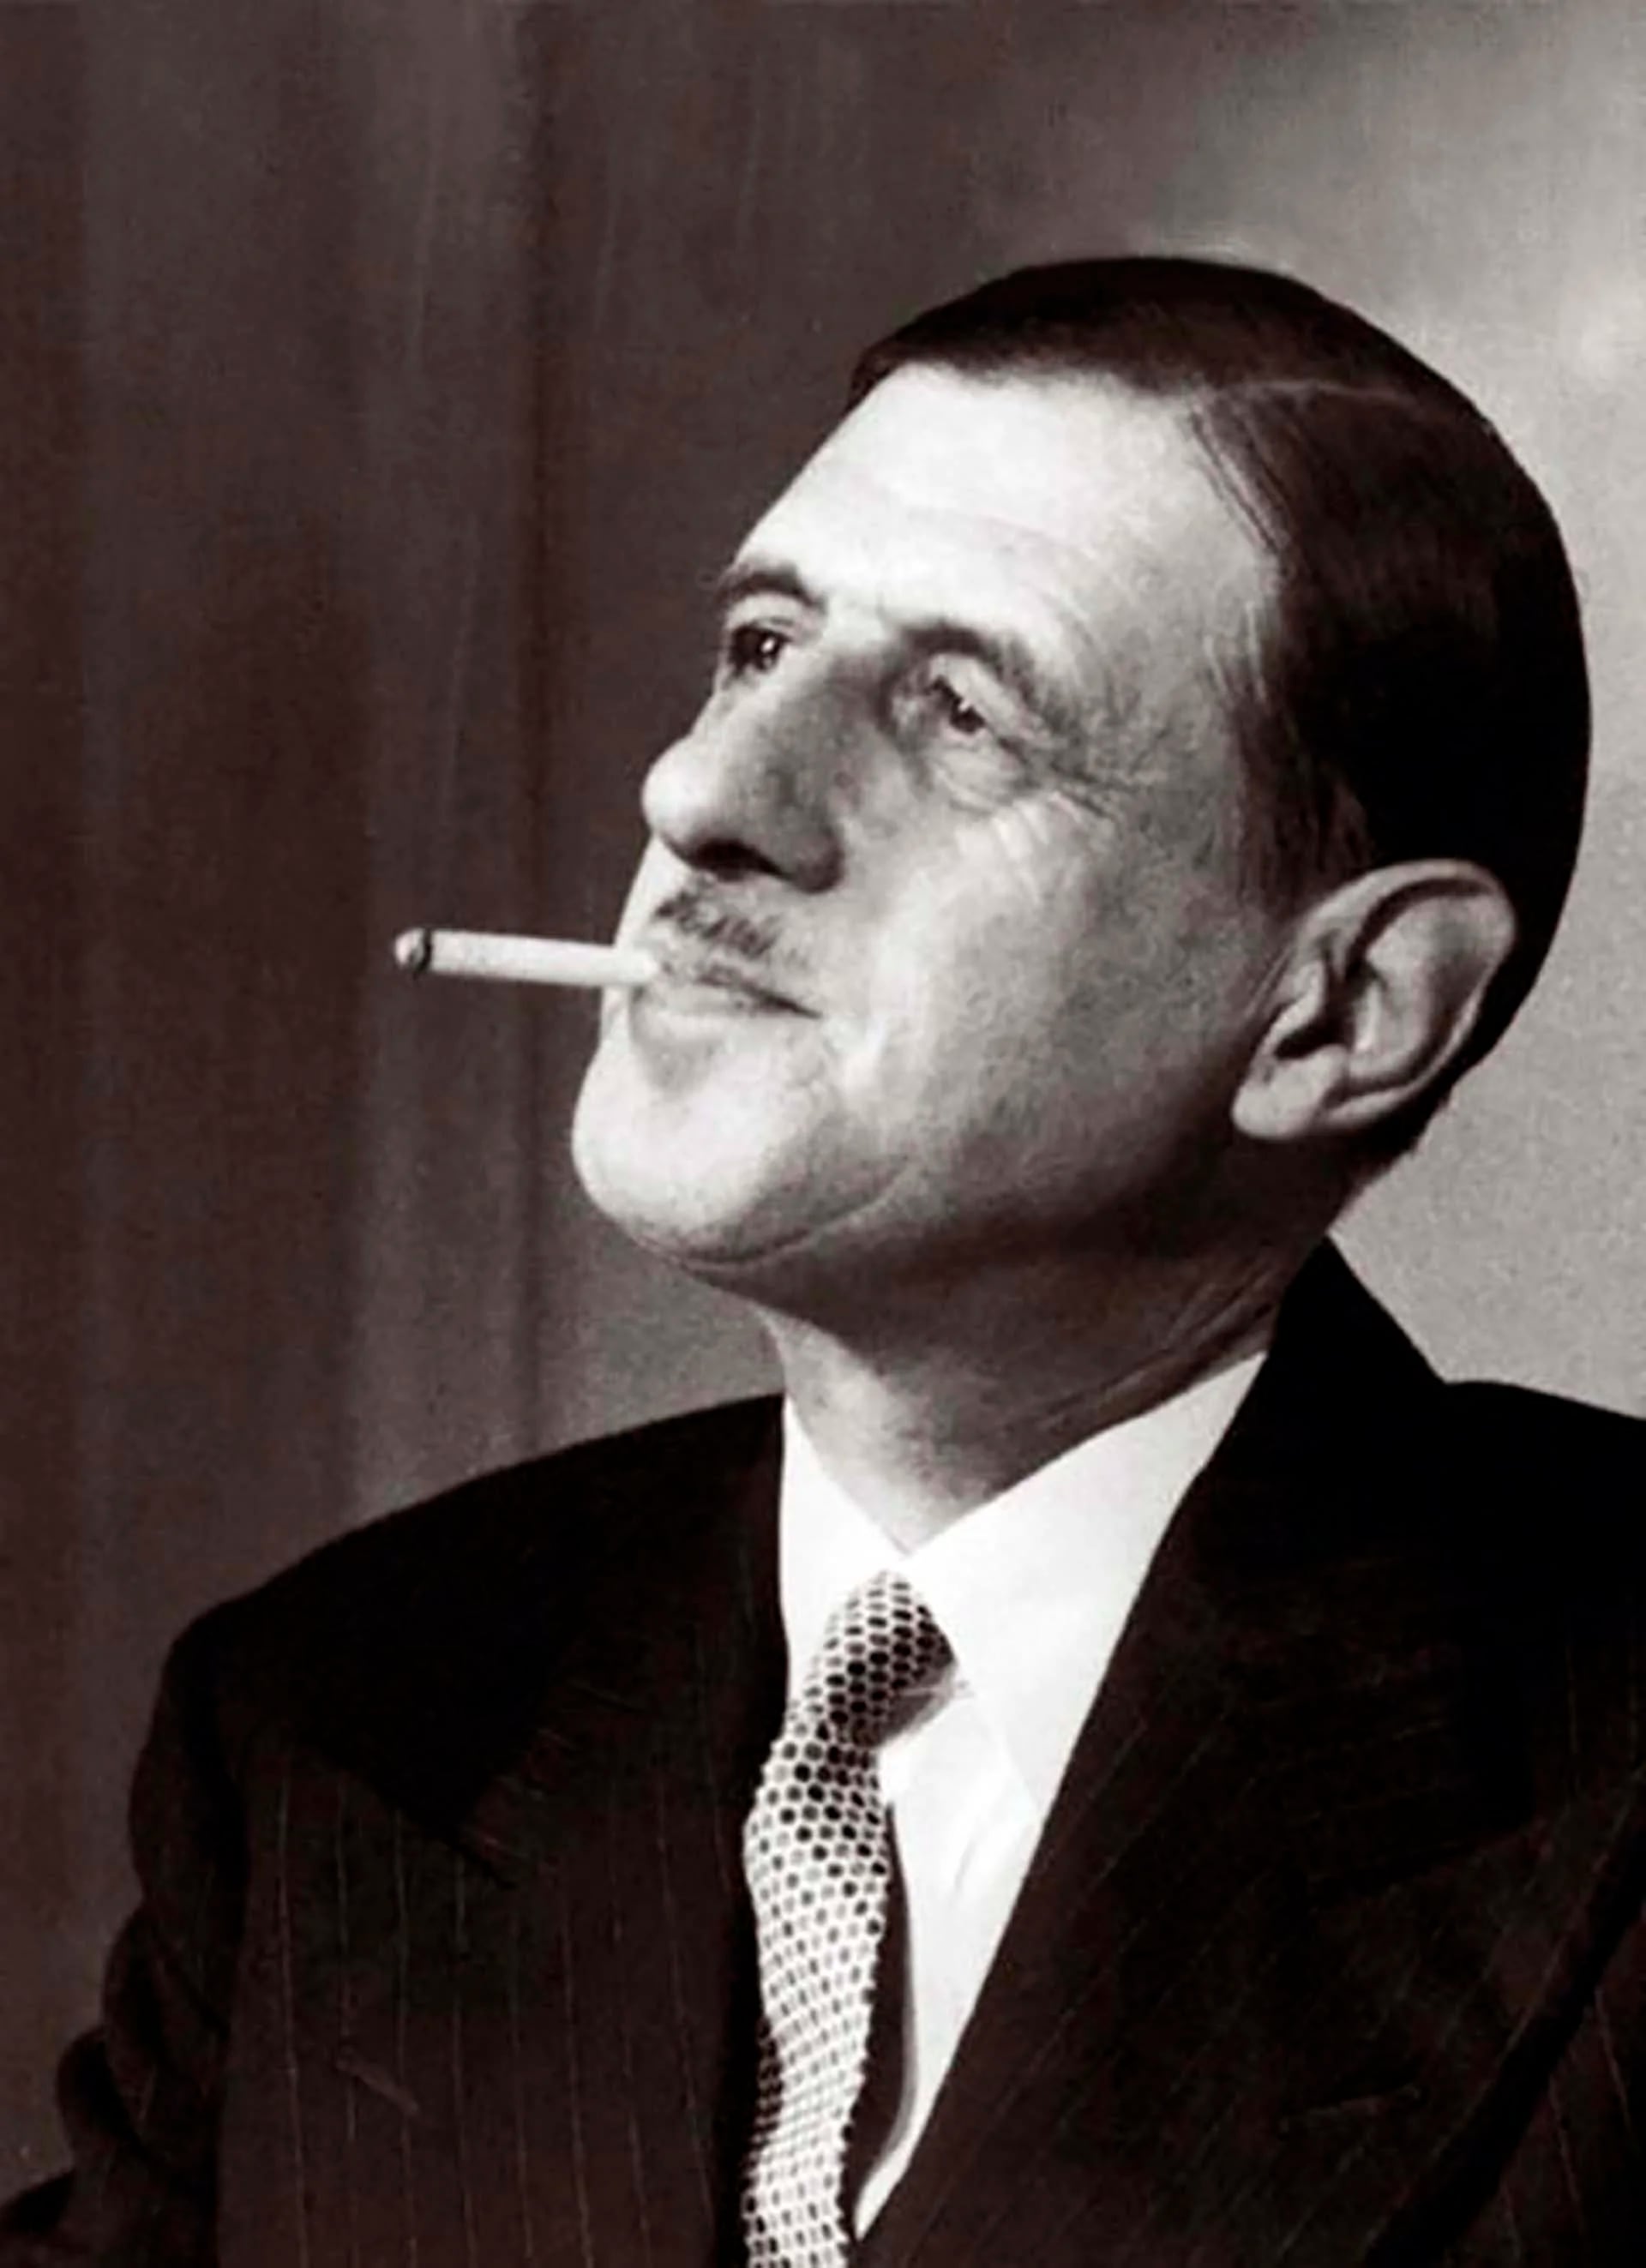 “Las mujeres estuvieron en la Resistencia, deben estar en la reconstrucción” (De Gaulle, 1945)